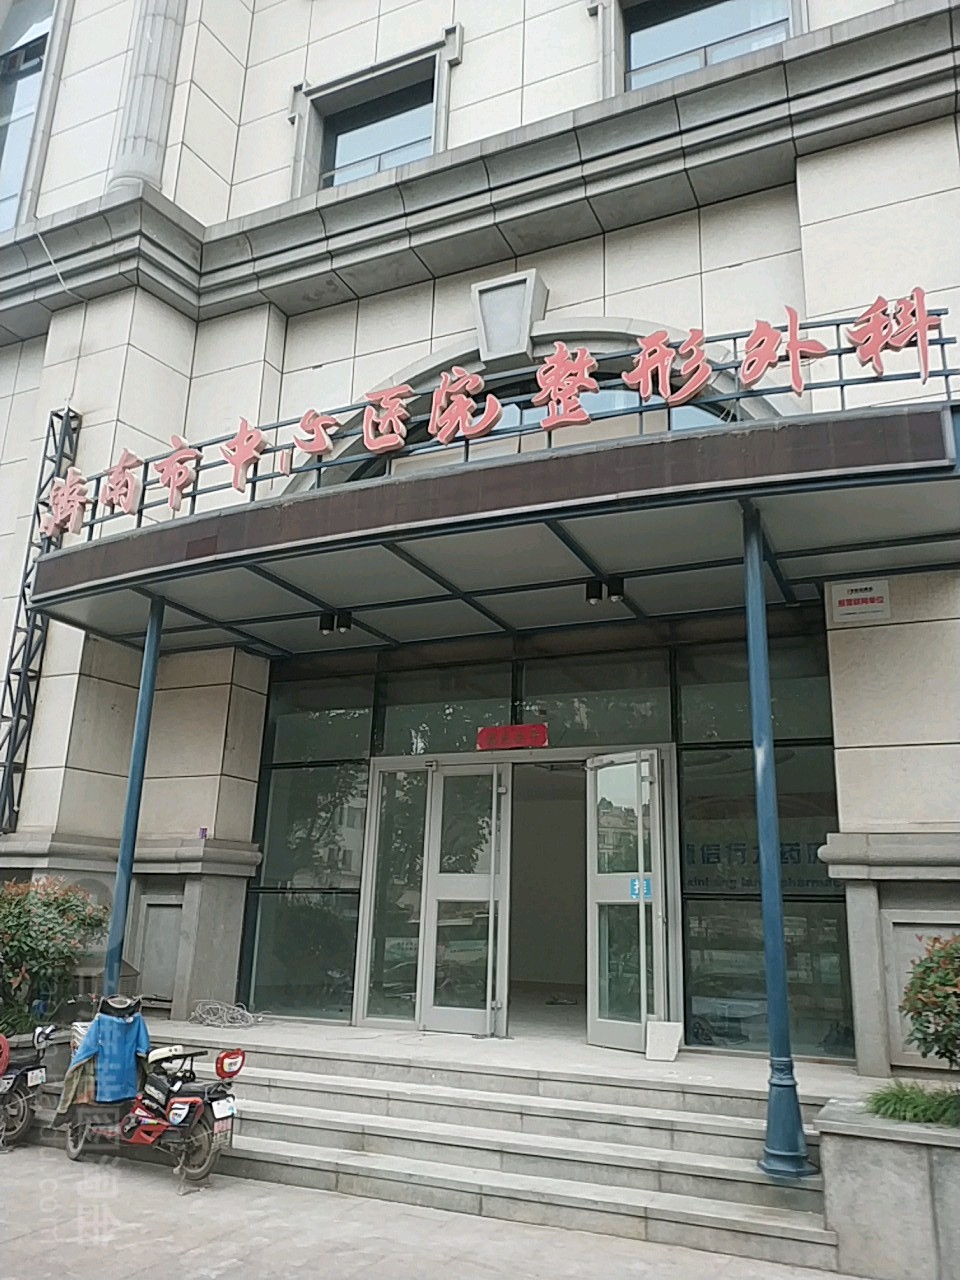 济南市中心医院-整形外科